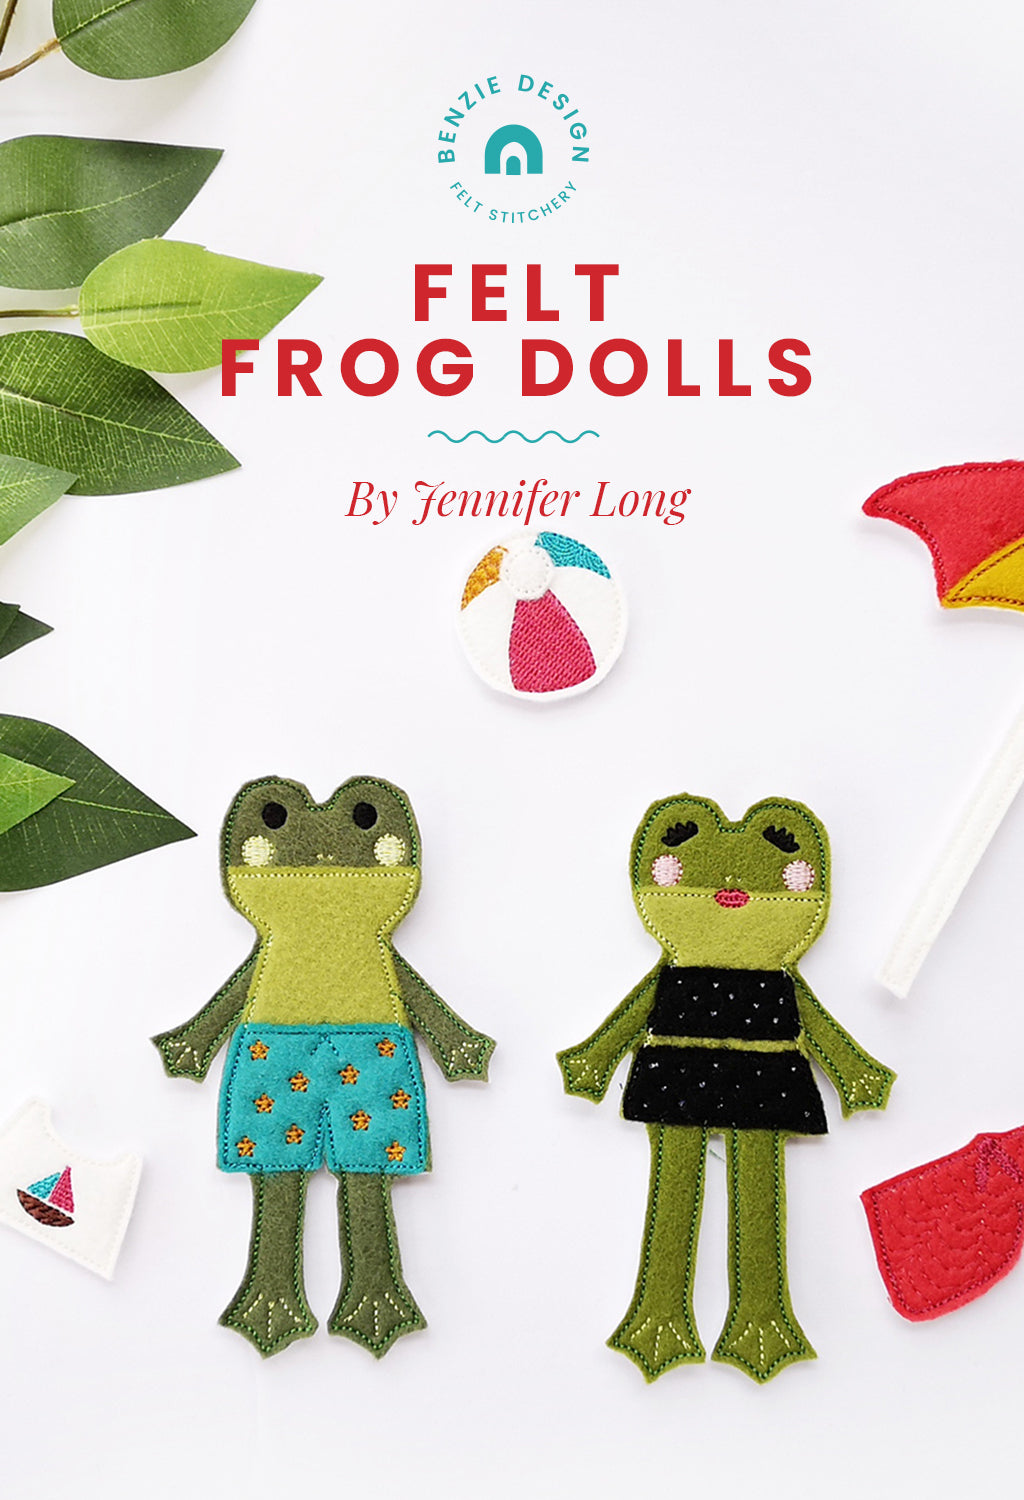 Felt frog doll tutorial